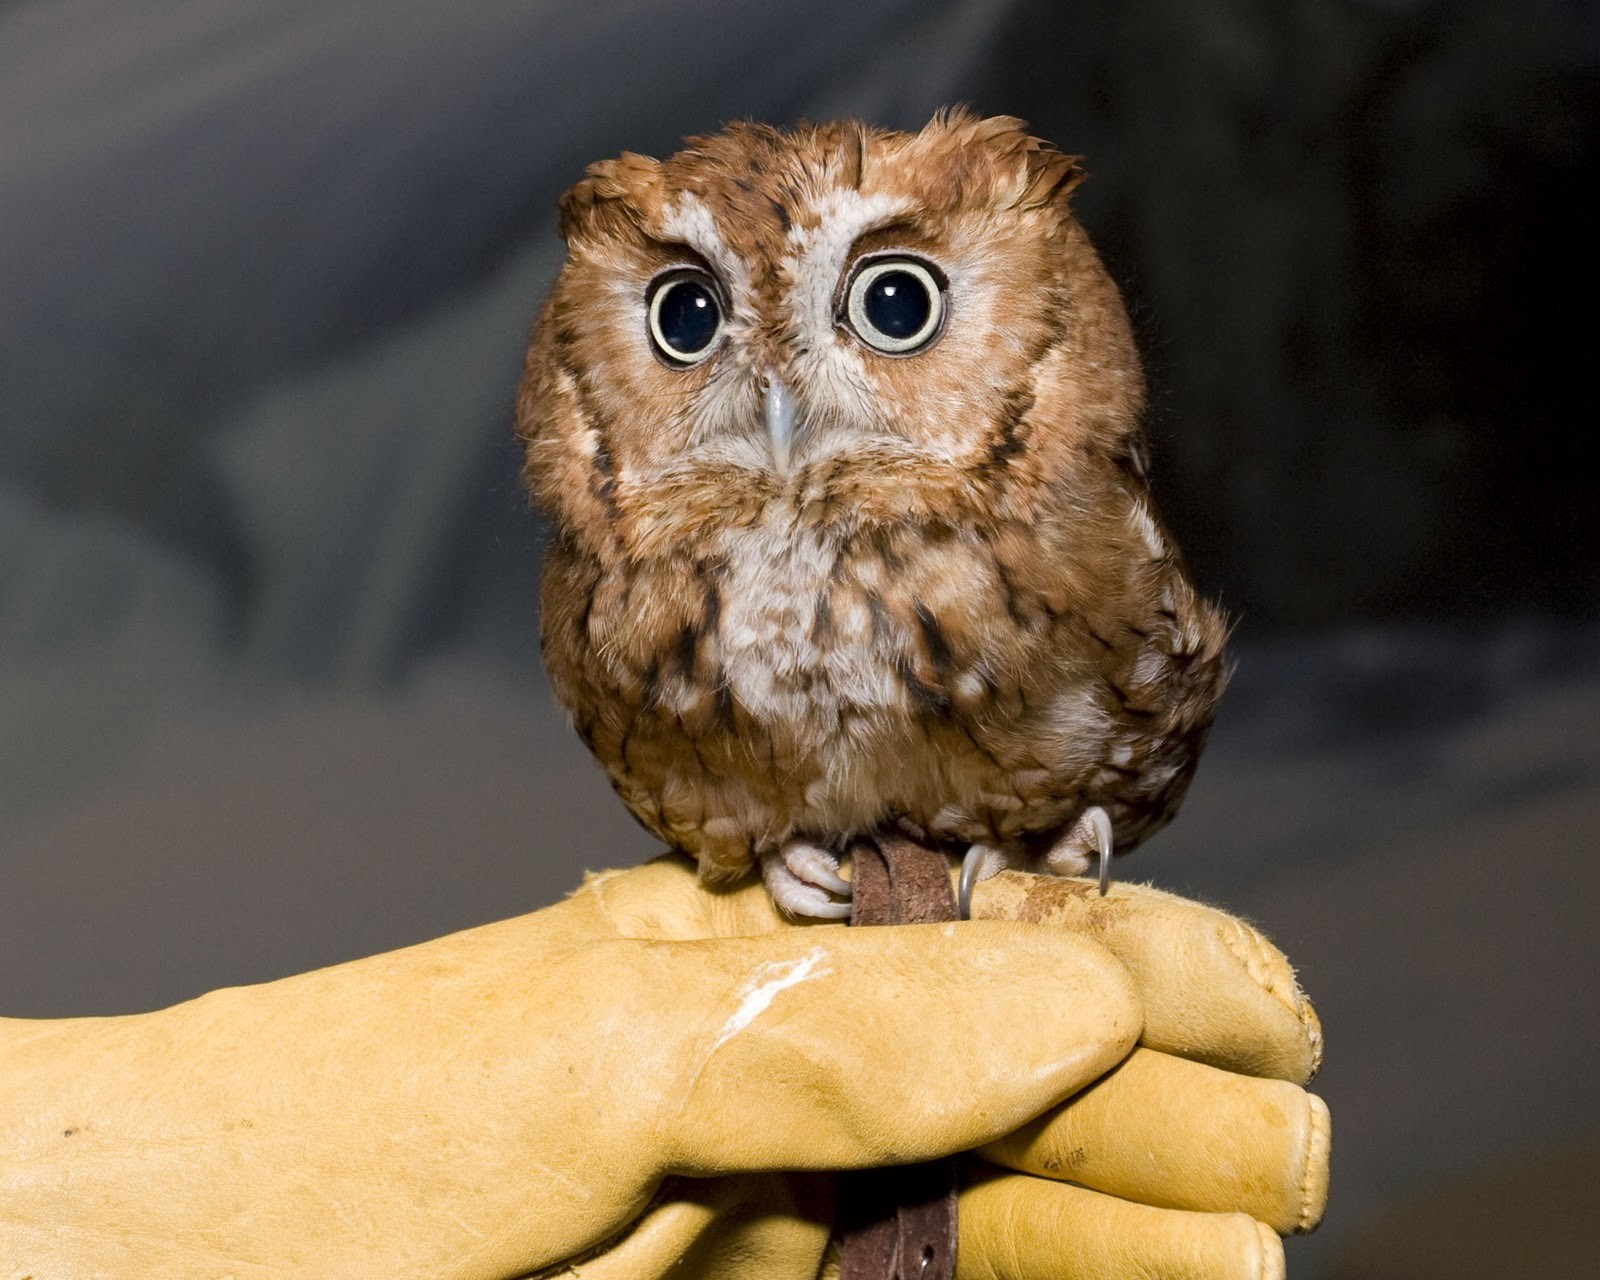 Just a little owl... - Imgur